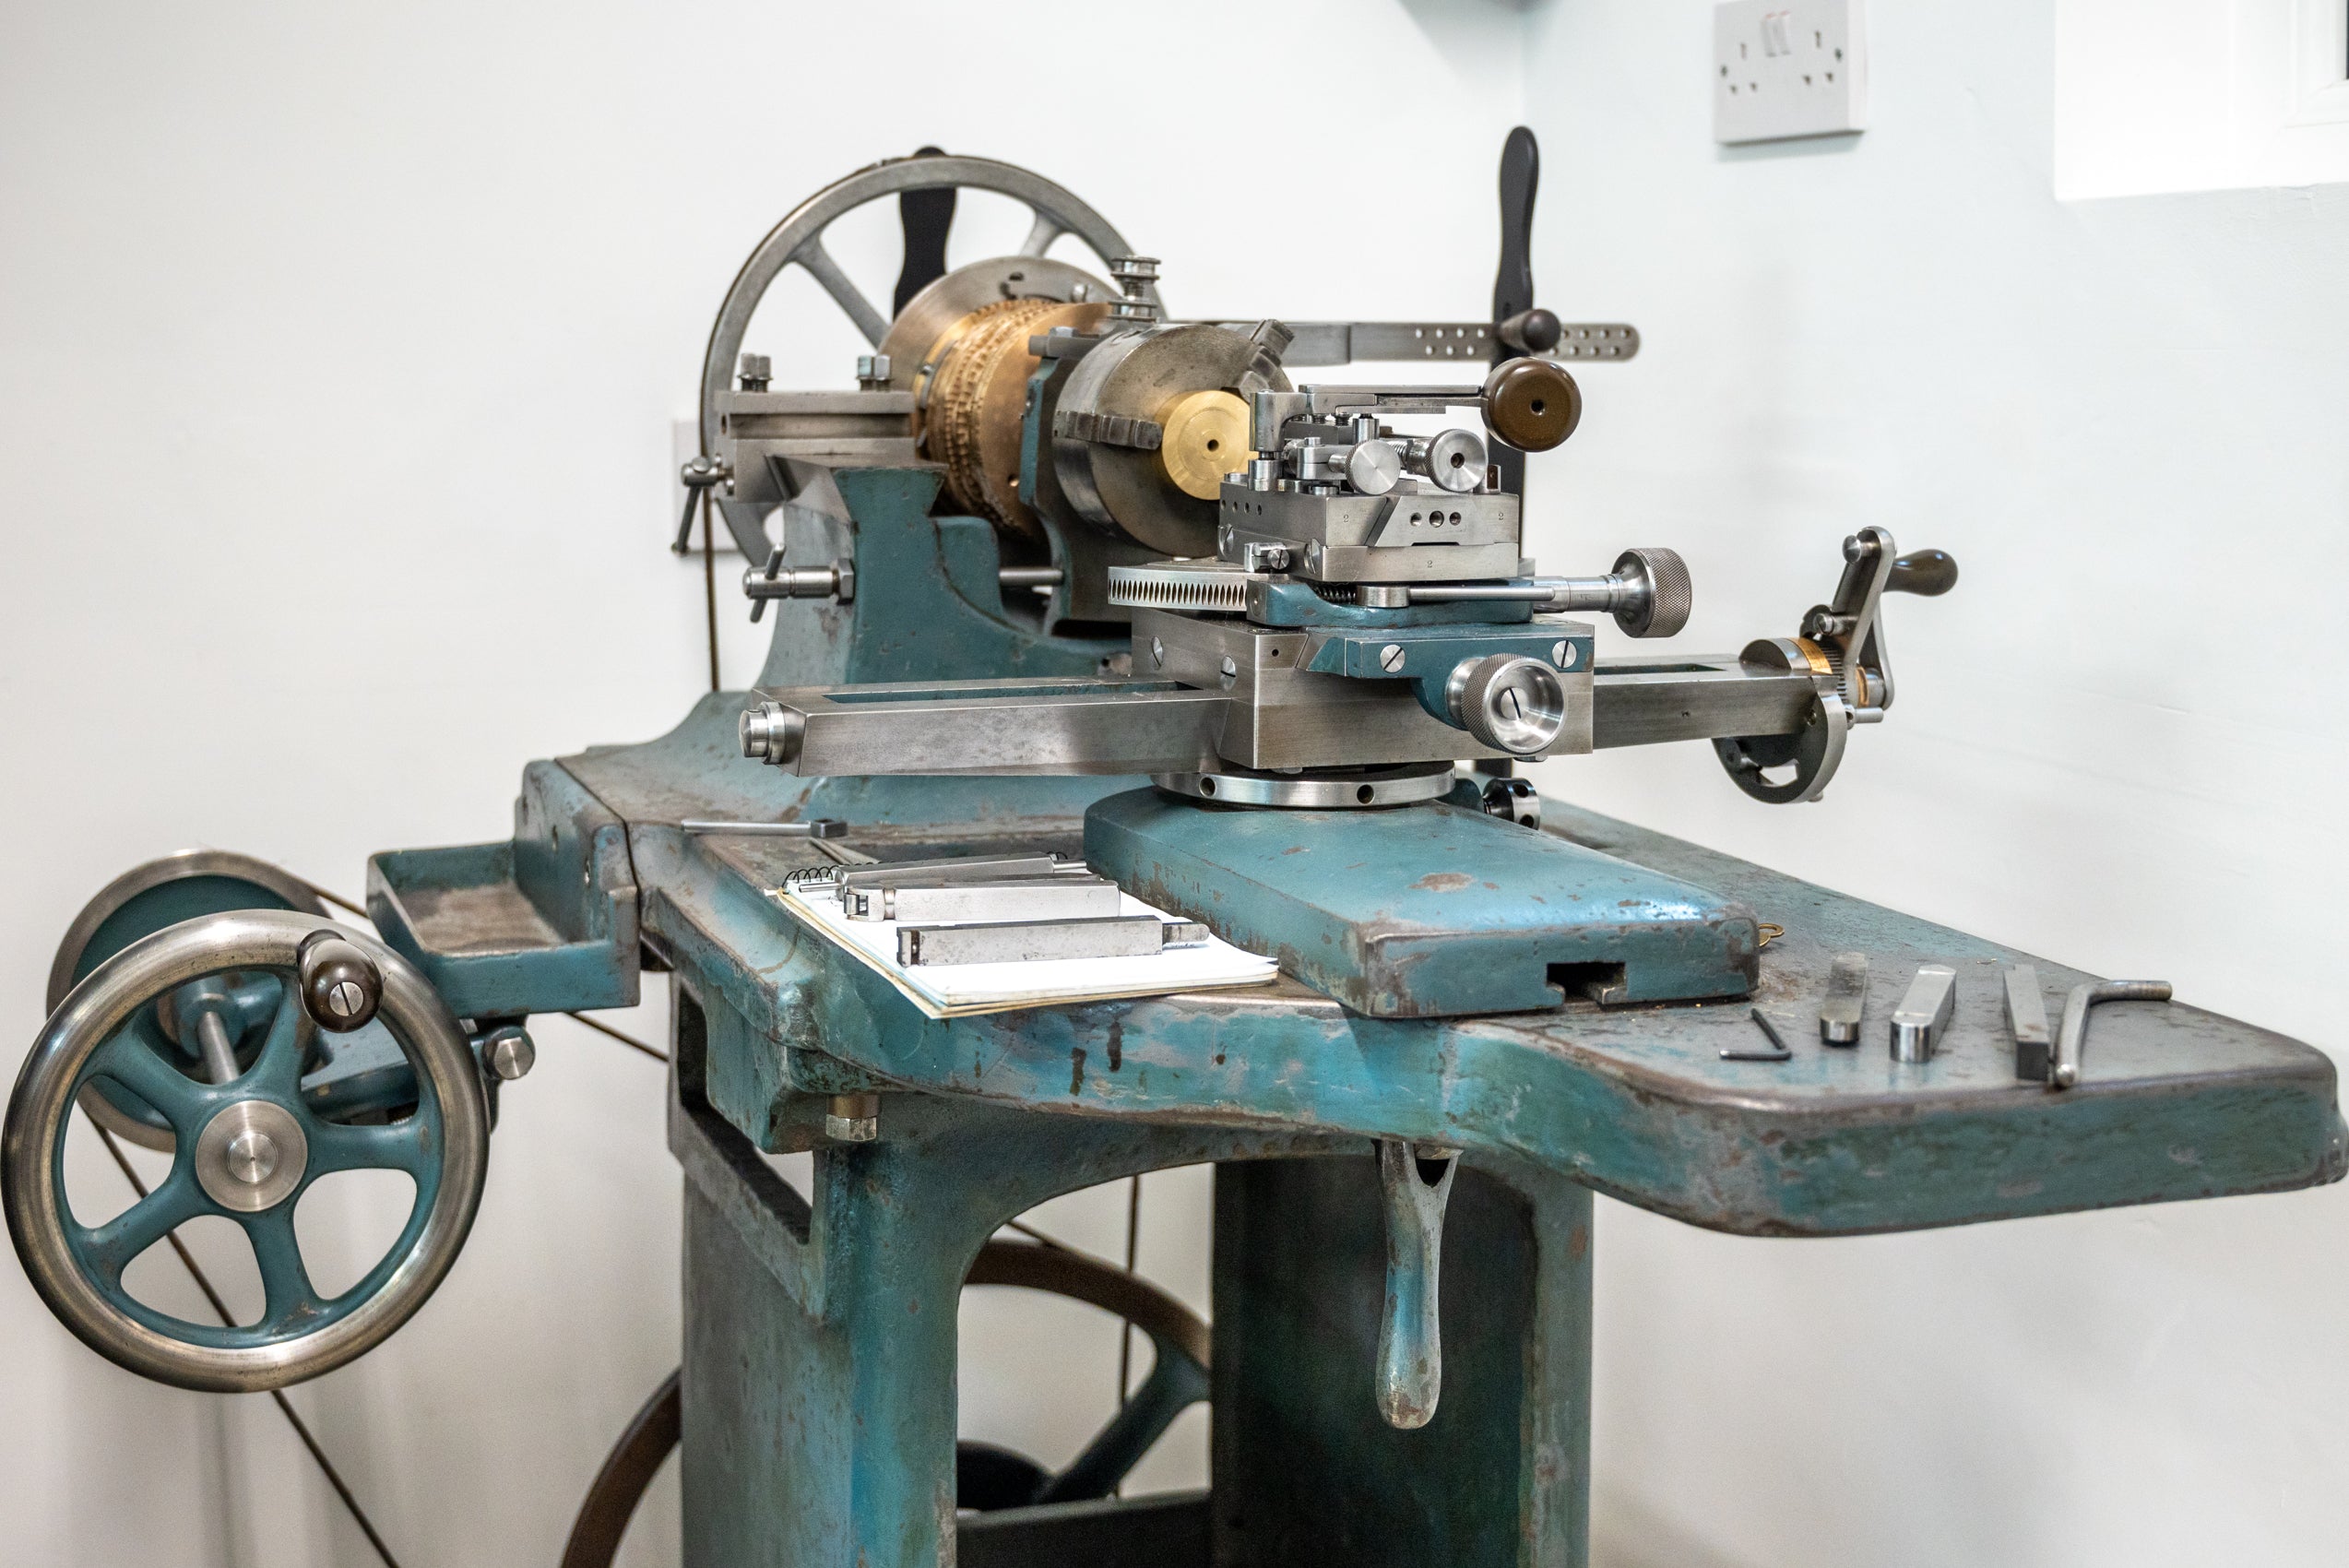 Historic rose engine lathe in Garrick's British watchmaking workshop